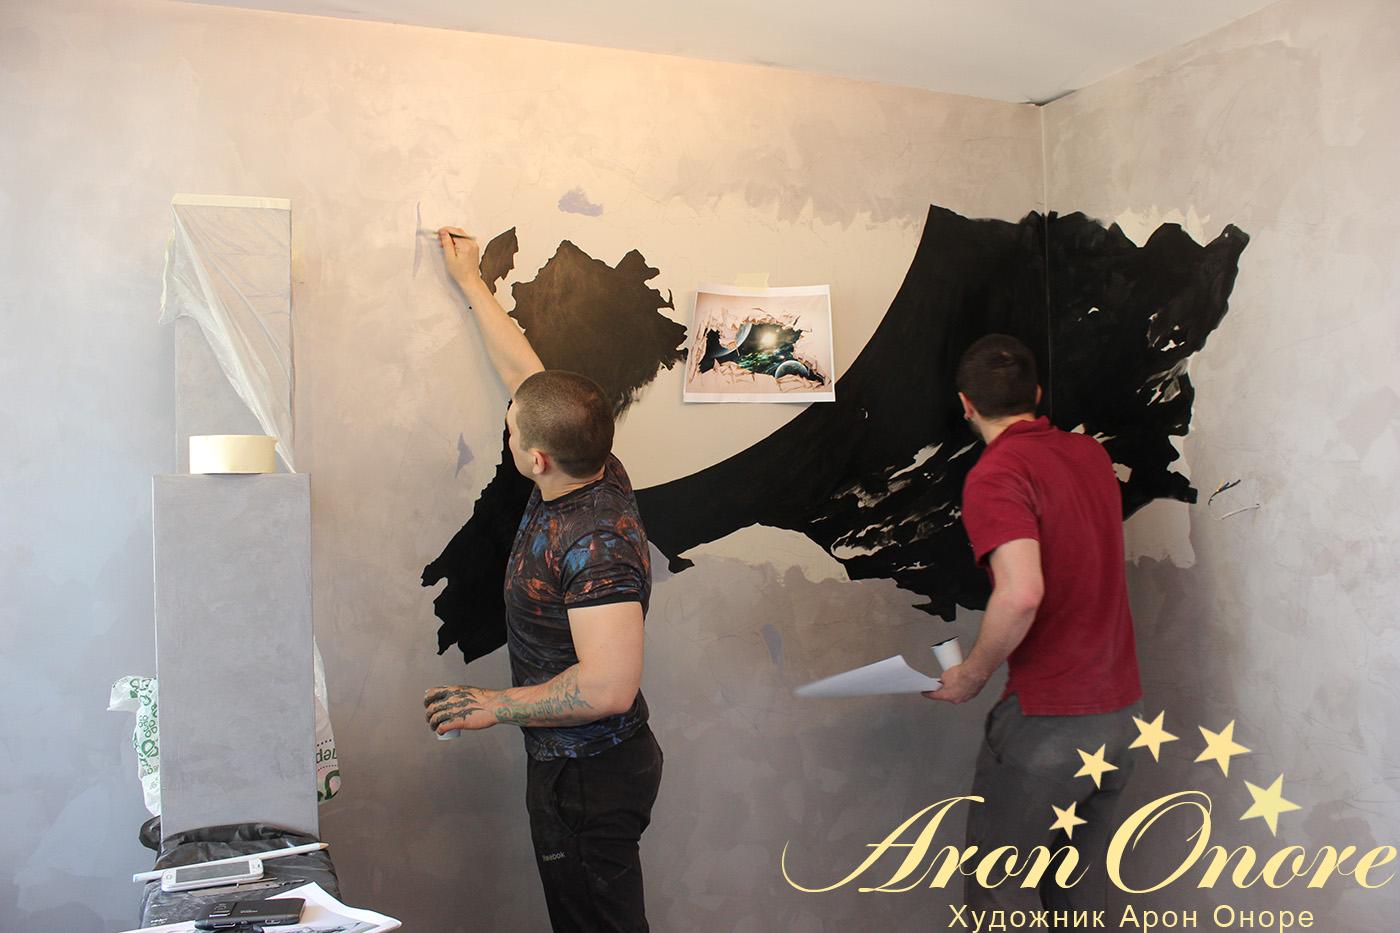 Художники студии росписи стен рисуют космос на стене в московской квартире